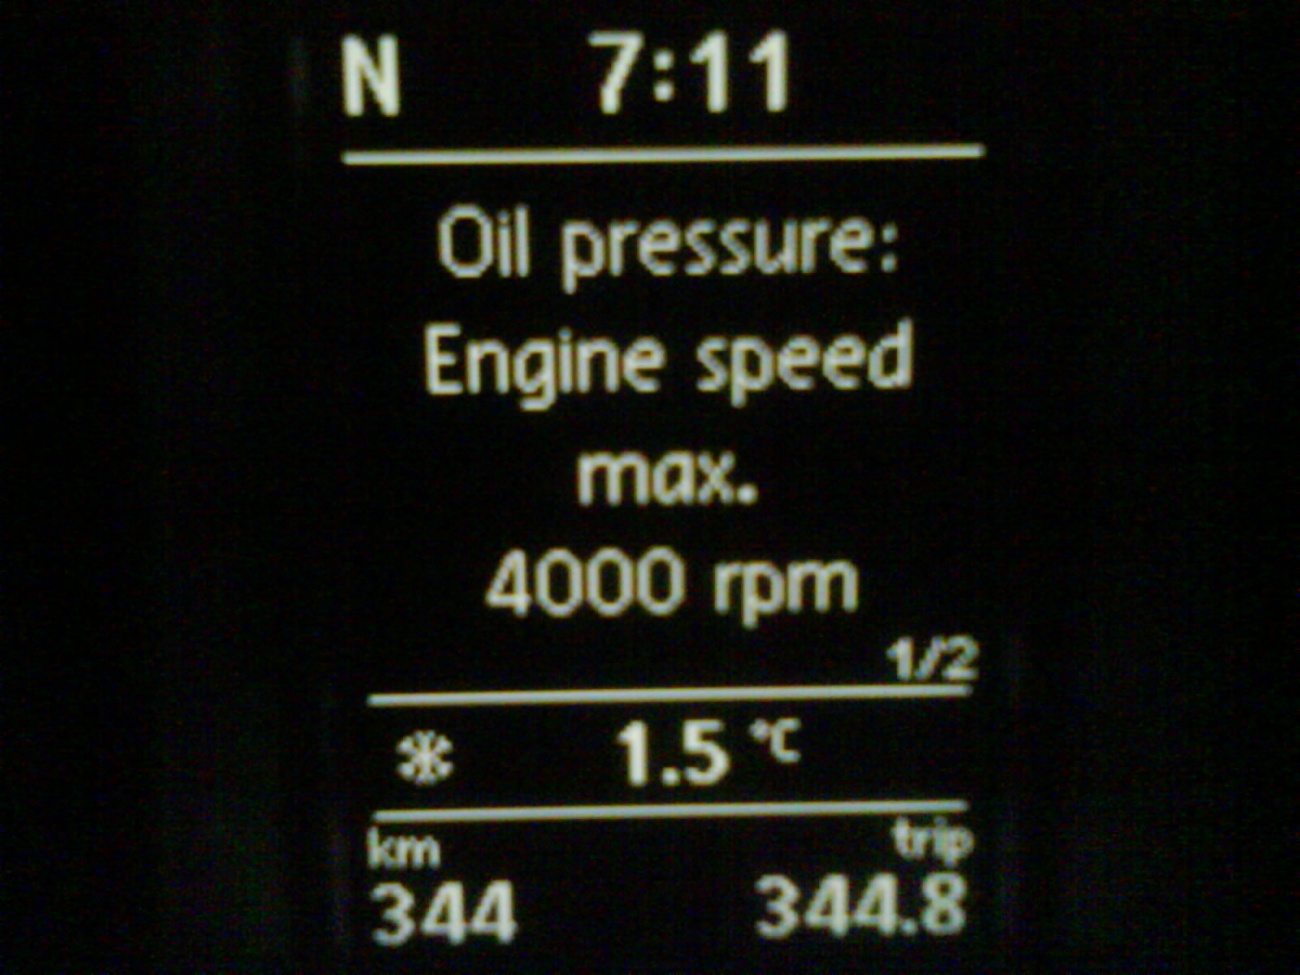 2013 vw passat oil pressure warning